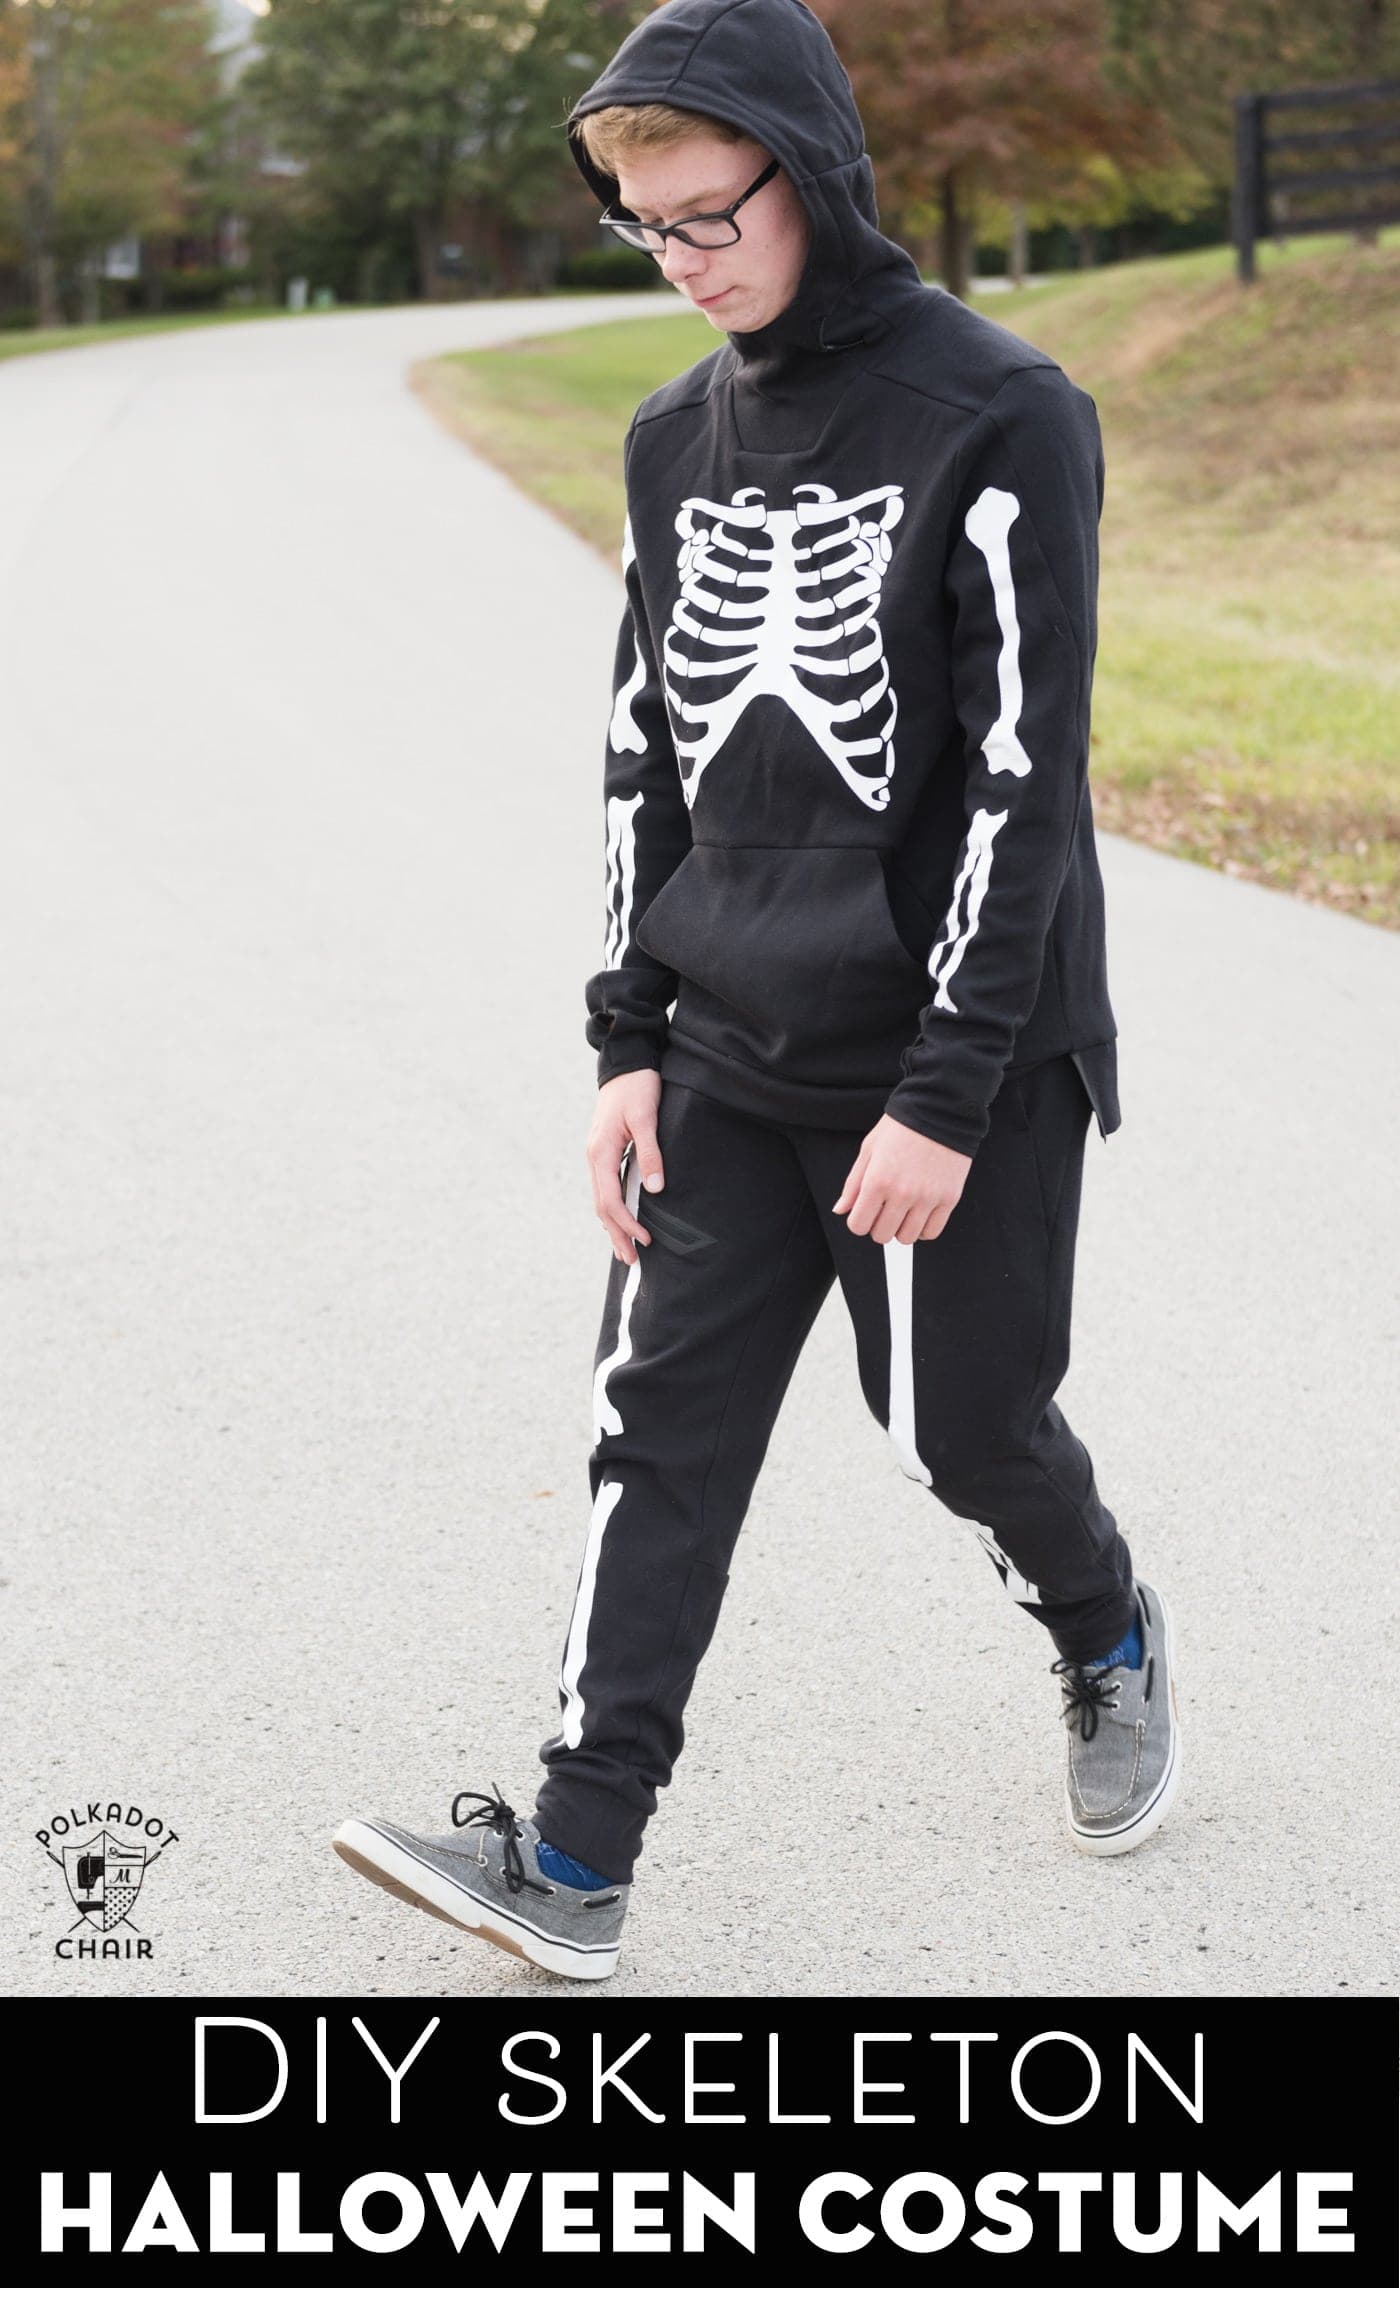 Costume de squelette DIY sur un adolescent debout à l'extérieur